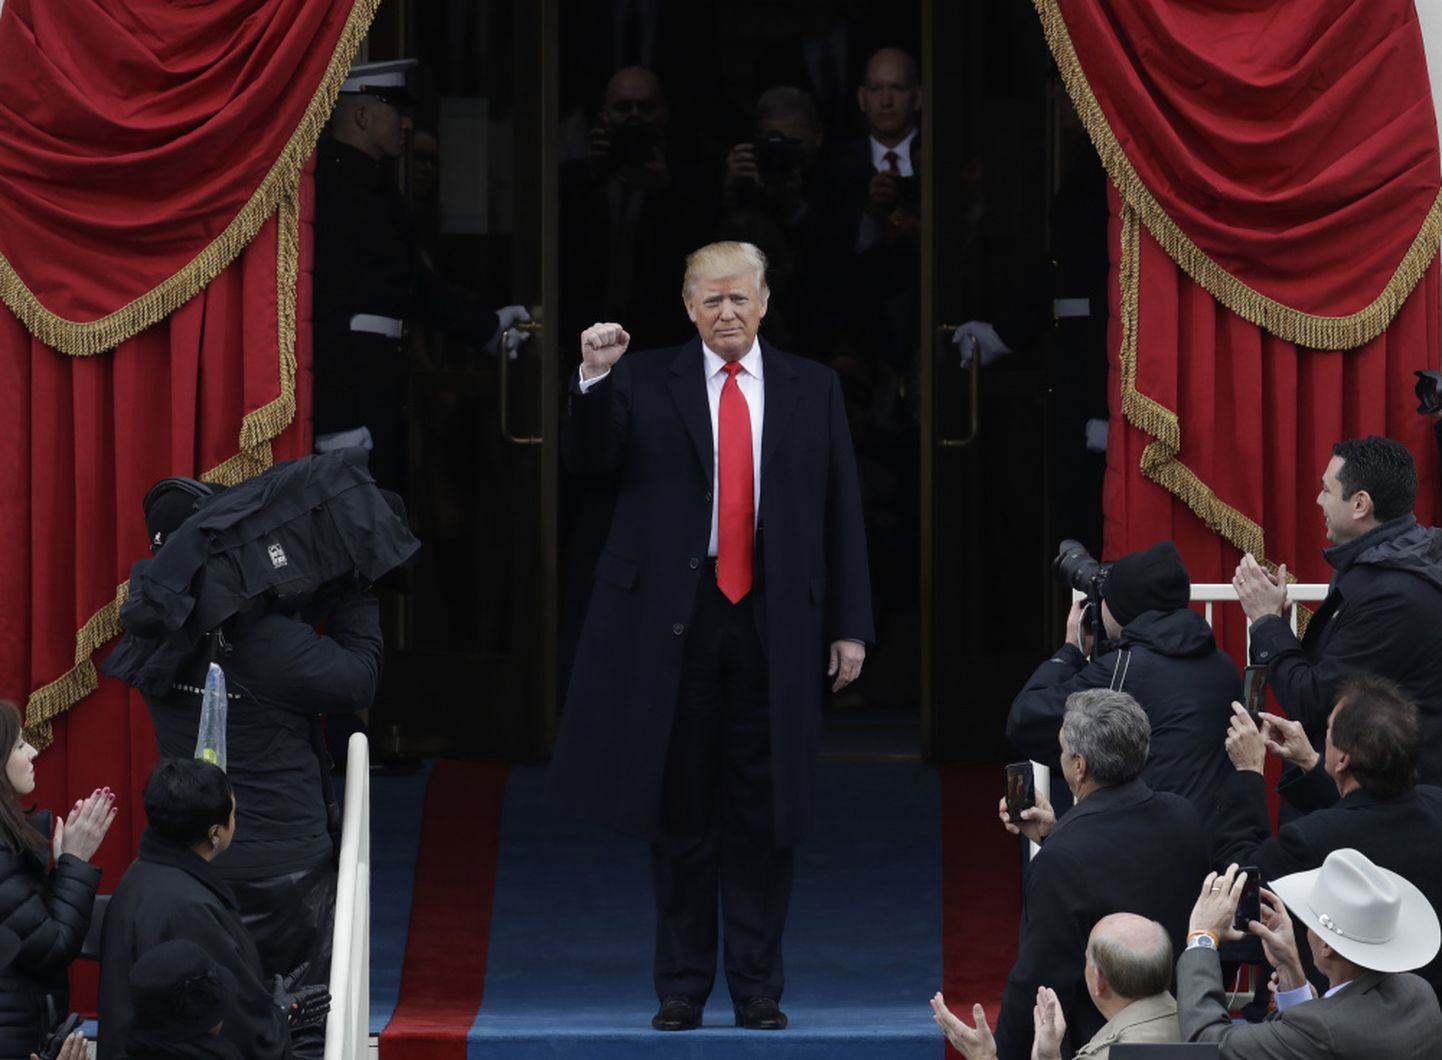 Donalds Tramps inaugurācijas ceremonijas laikā 2017.gada janvārī